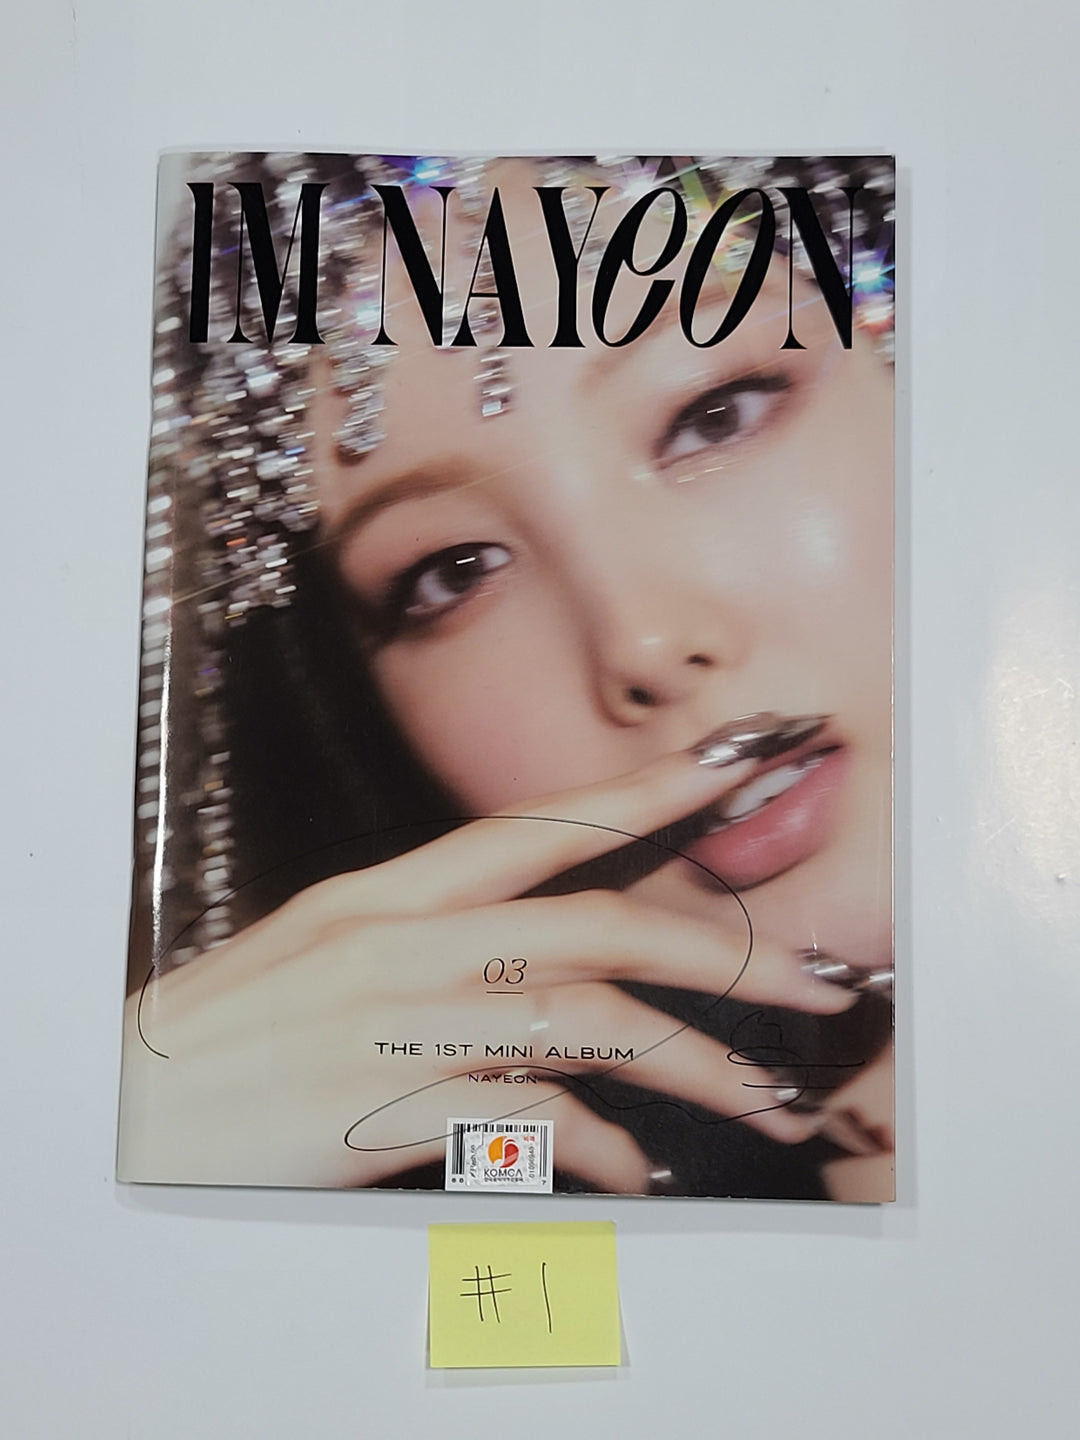 Nayeon "IM NAYEON" - Hand Autographed(Signed) Promo Album